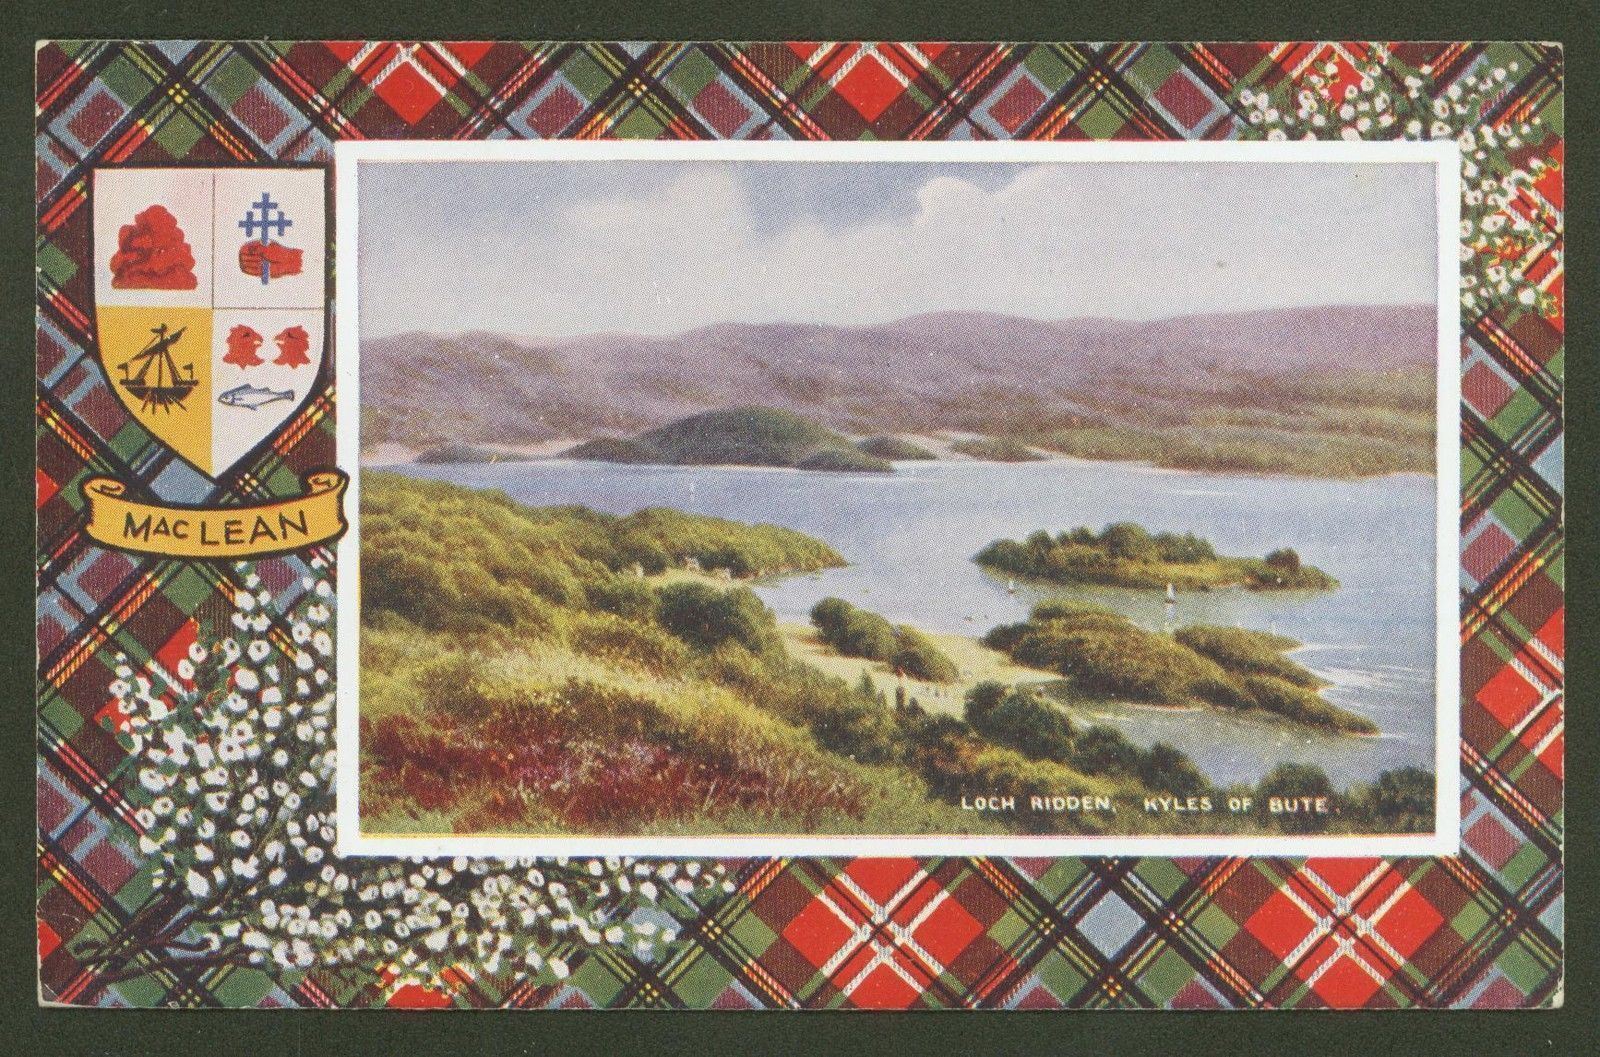 The MacLean Tartan & Loch Ridden, Kyles of Bute - Valentine\'s Printed Postcard